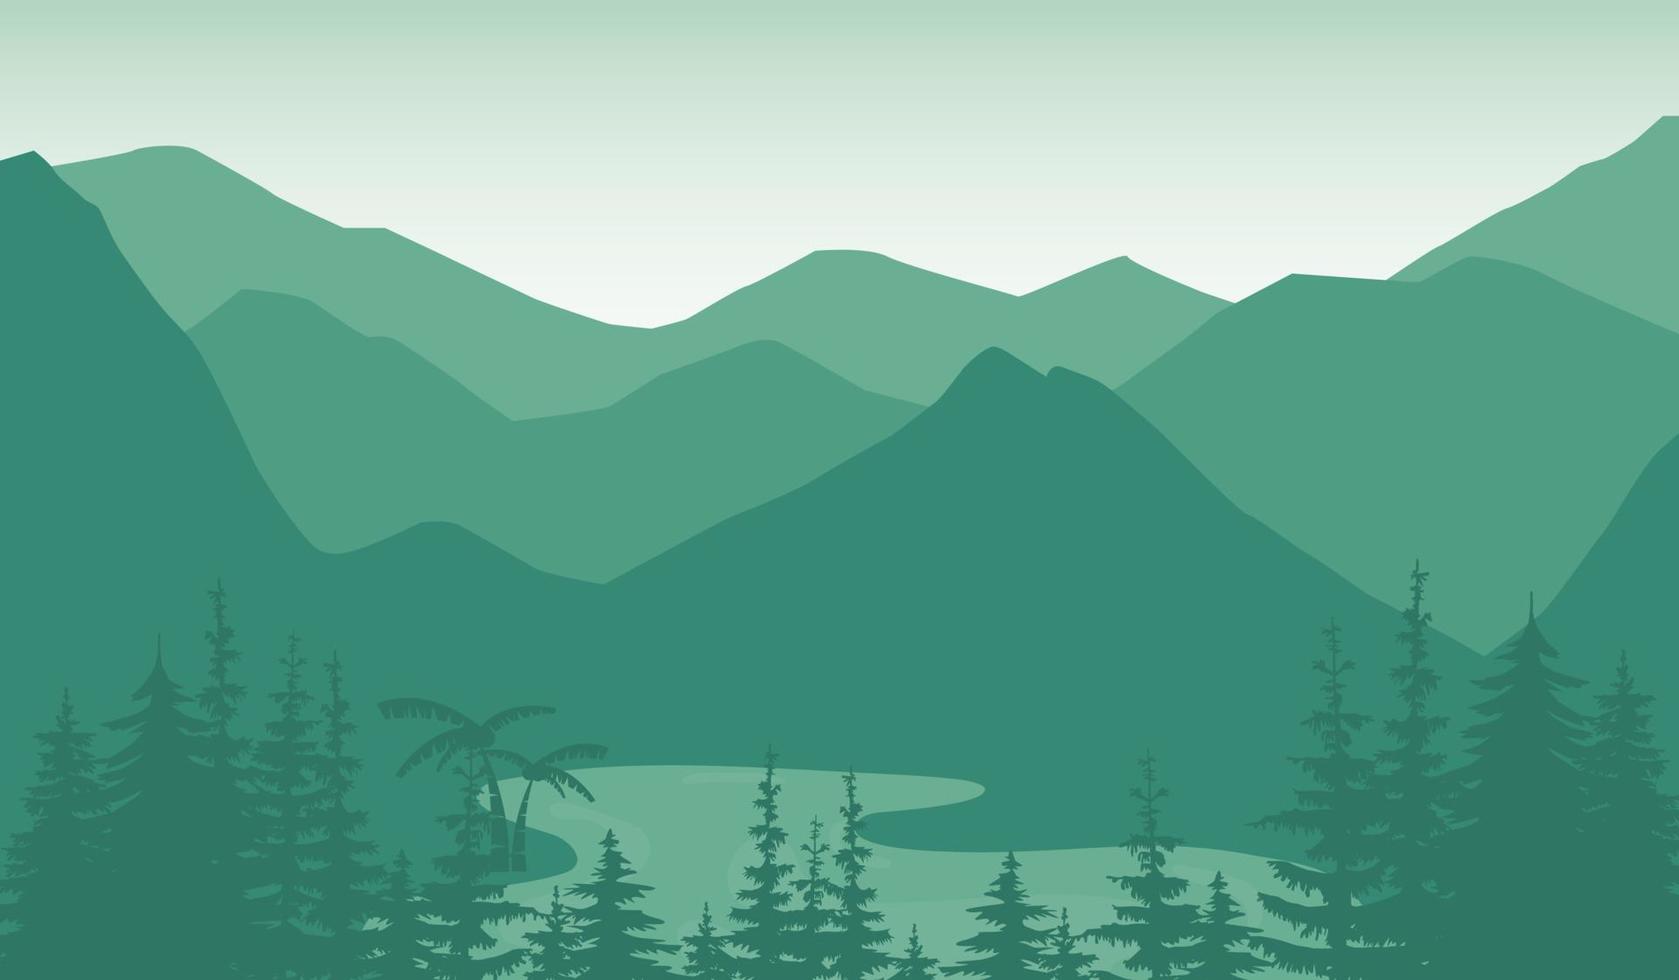 paisaje vectorial con siluetas de montañas, árboles y cielo, amanecer o atardecer y río. vector